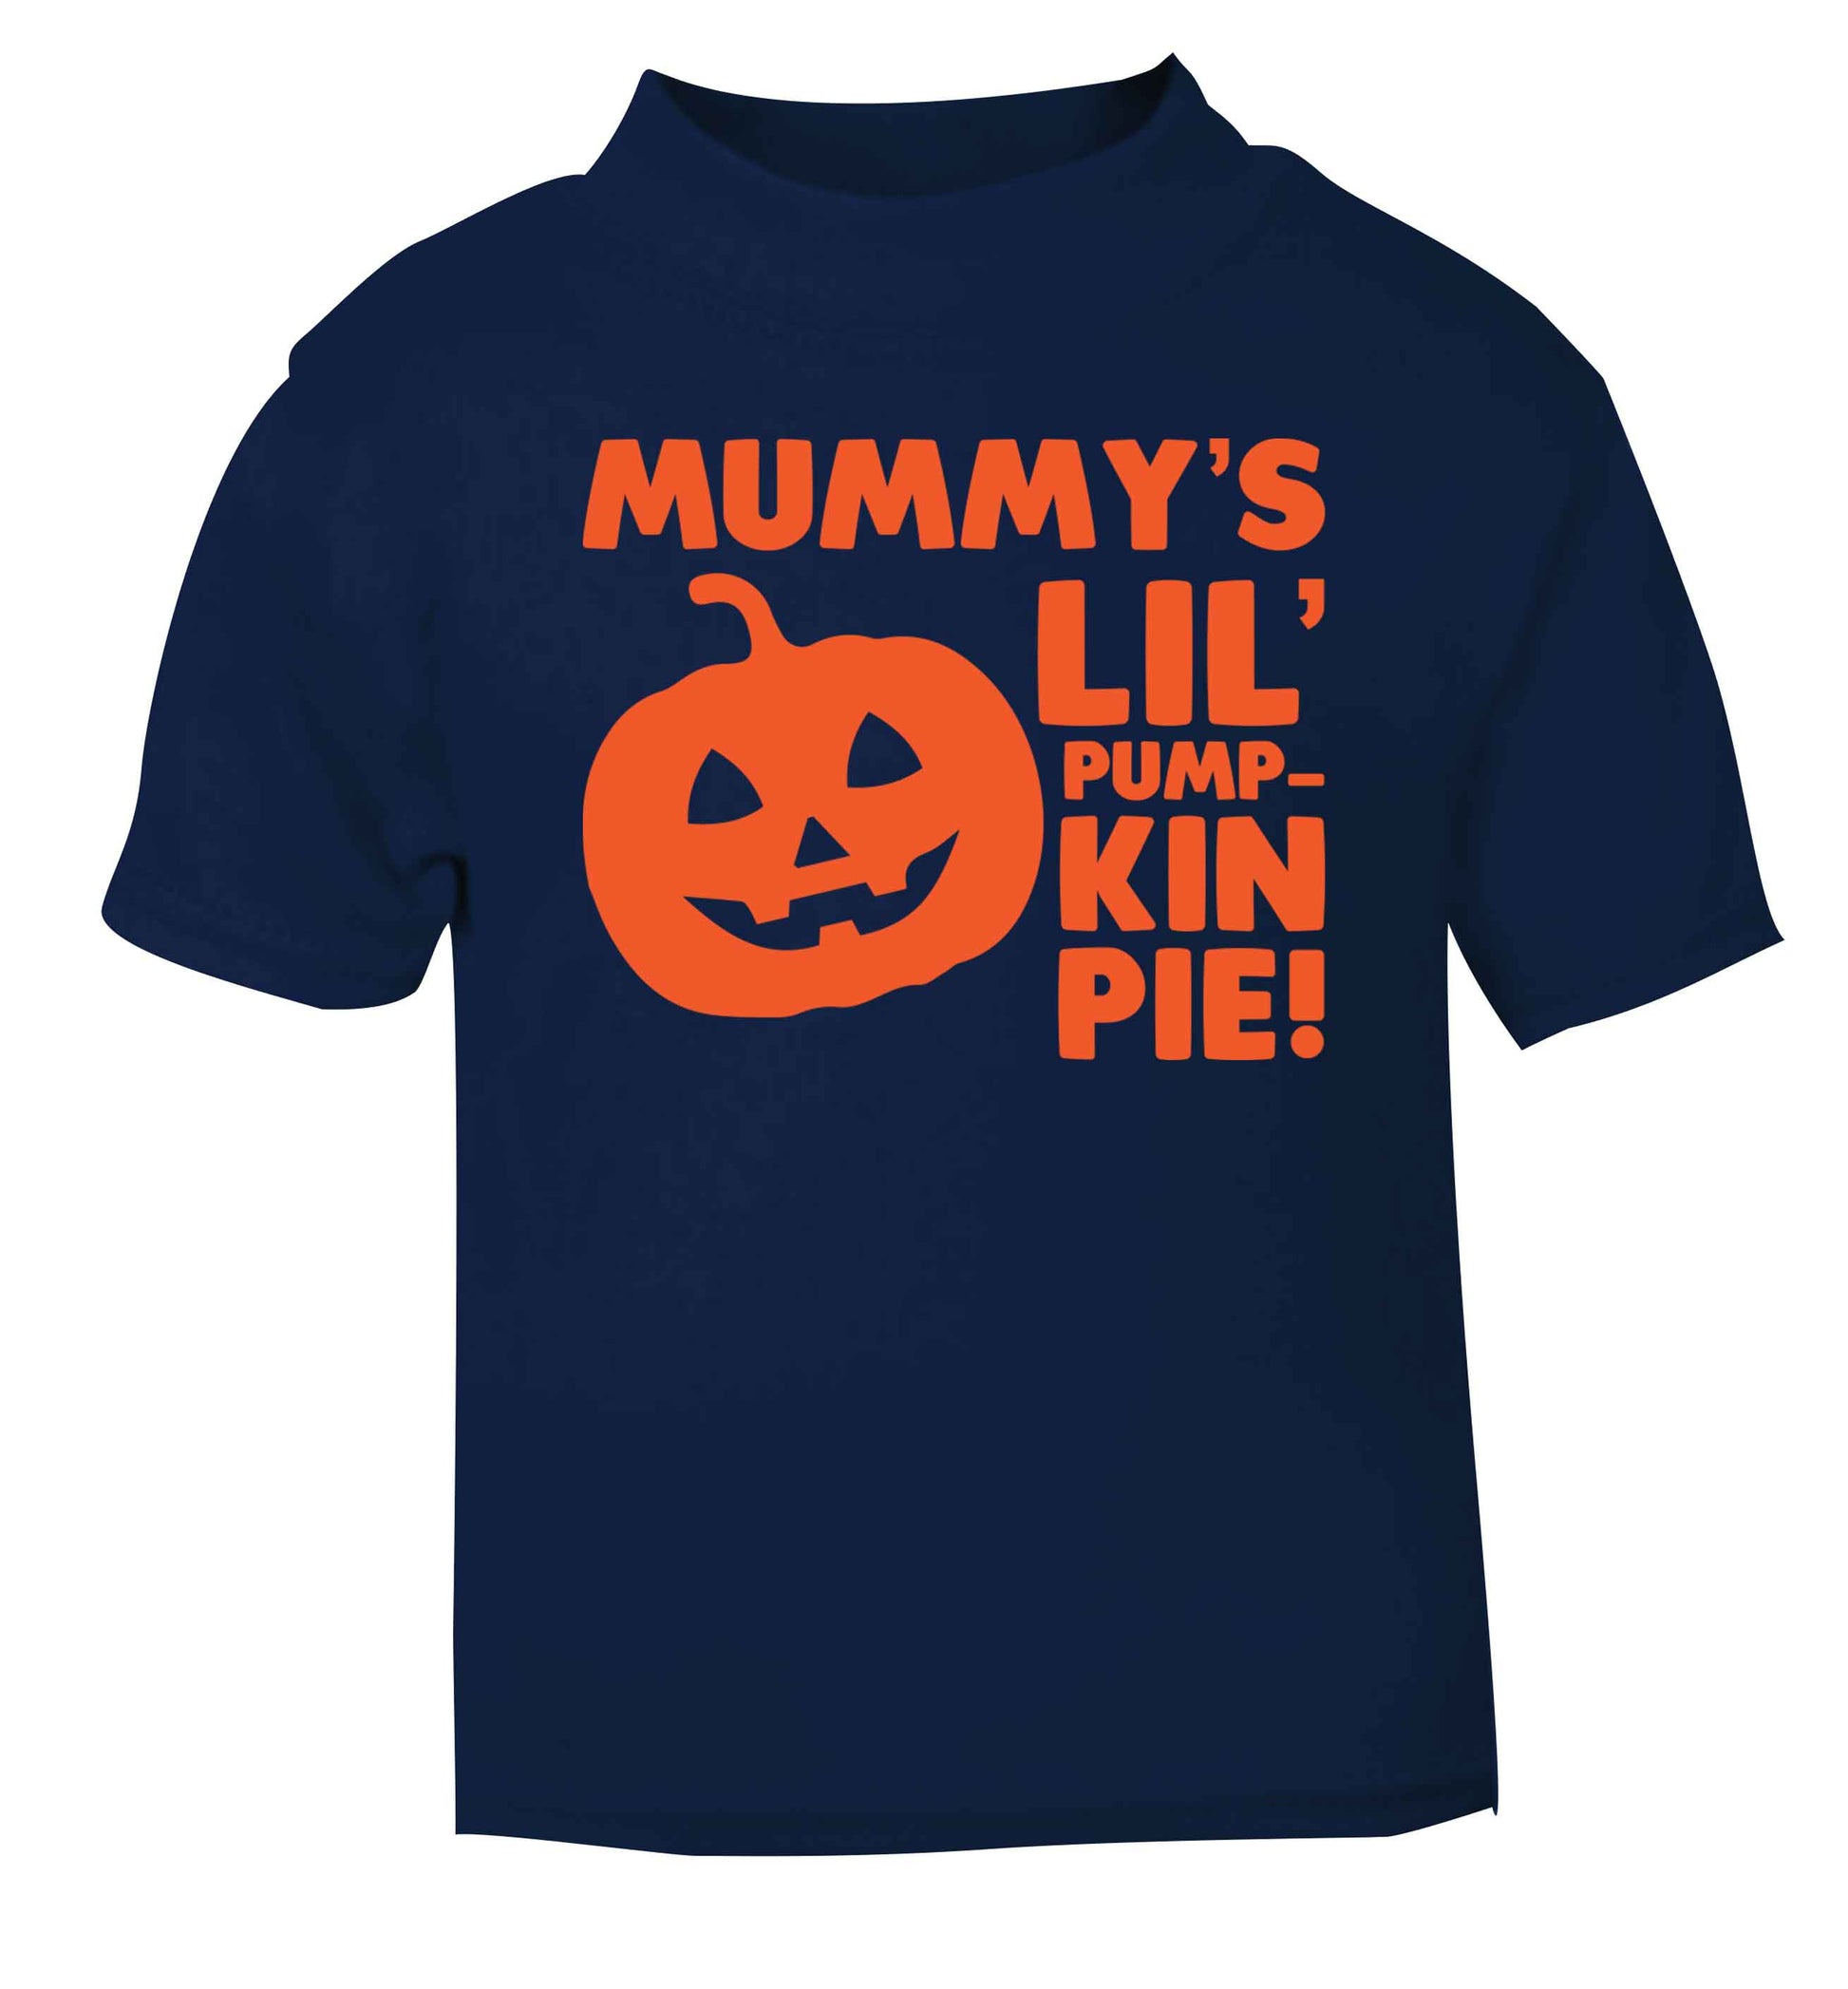 Mummy's lil' pumpkin pie navy baby toddler Tshirt 2 Years